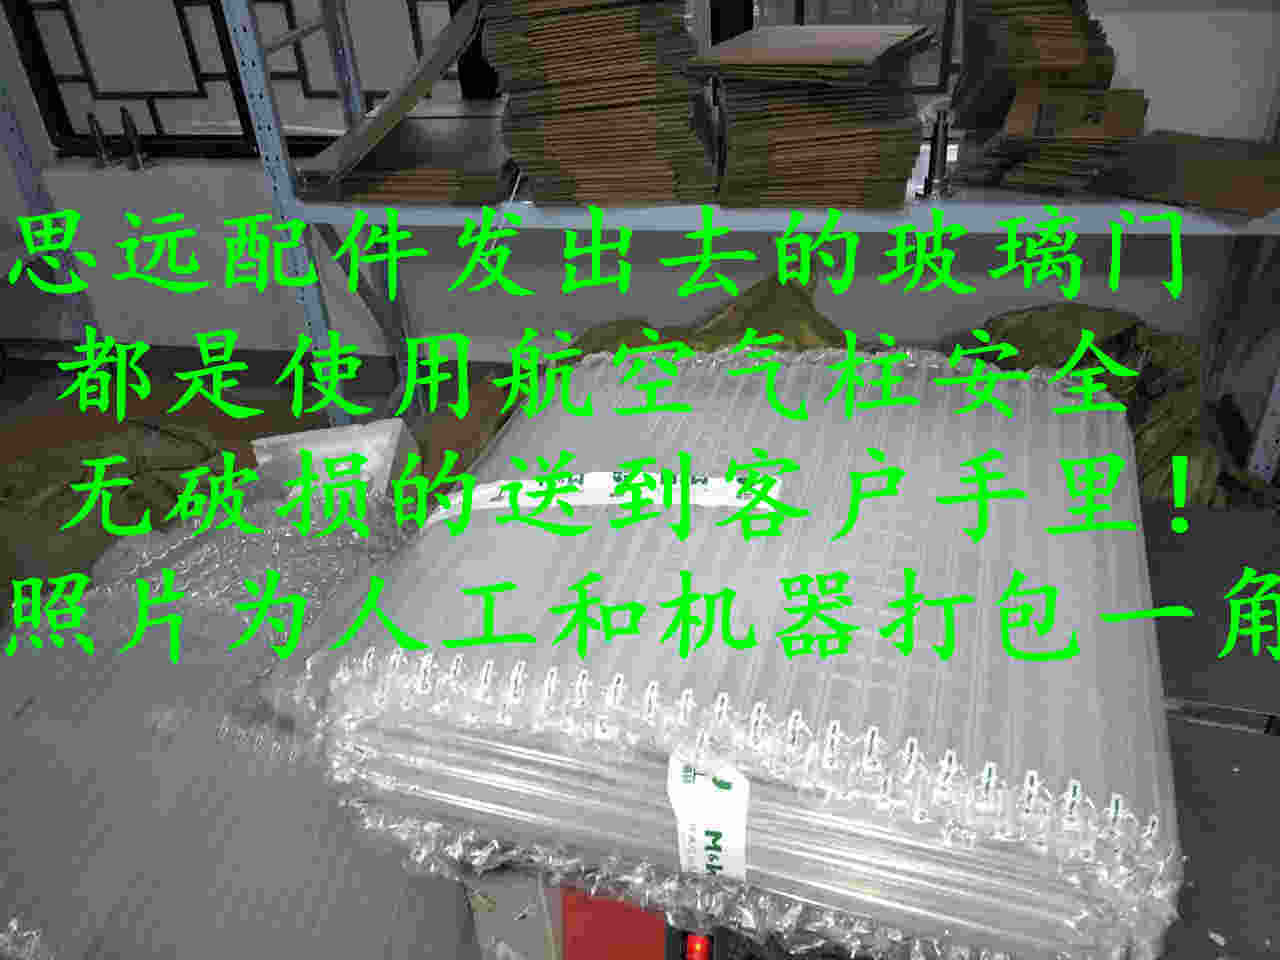 上海思远电器配件拆机店是正品吗淘宝店